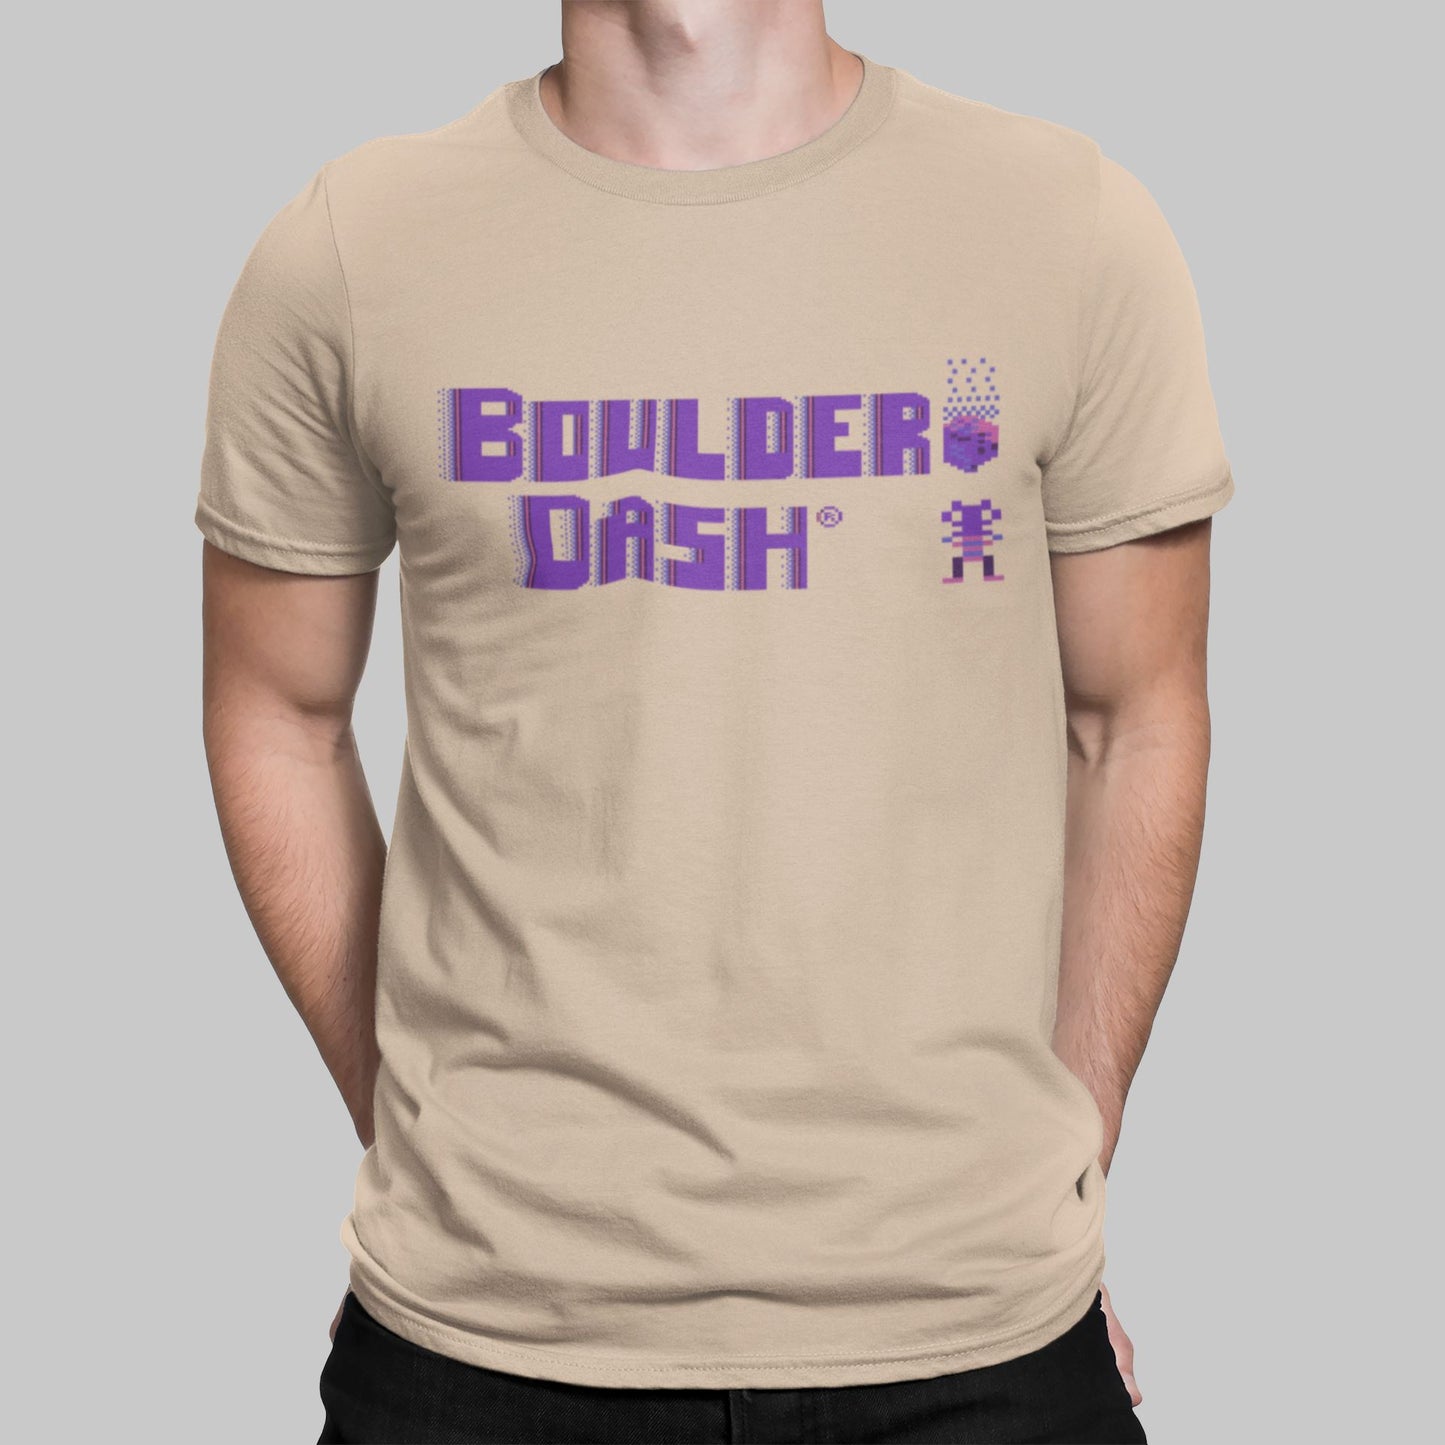 Boulder Dash Retro Gaming T-Shirt T-Shirt Seven Squared Small 34-36" Natural 